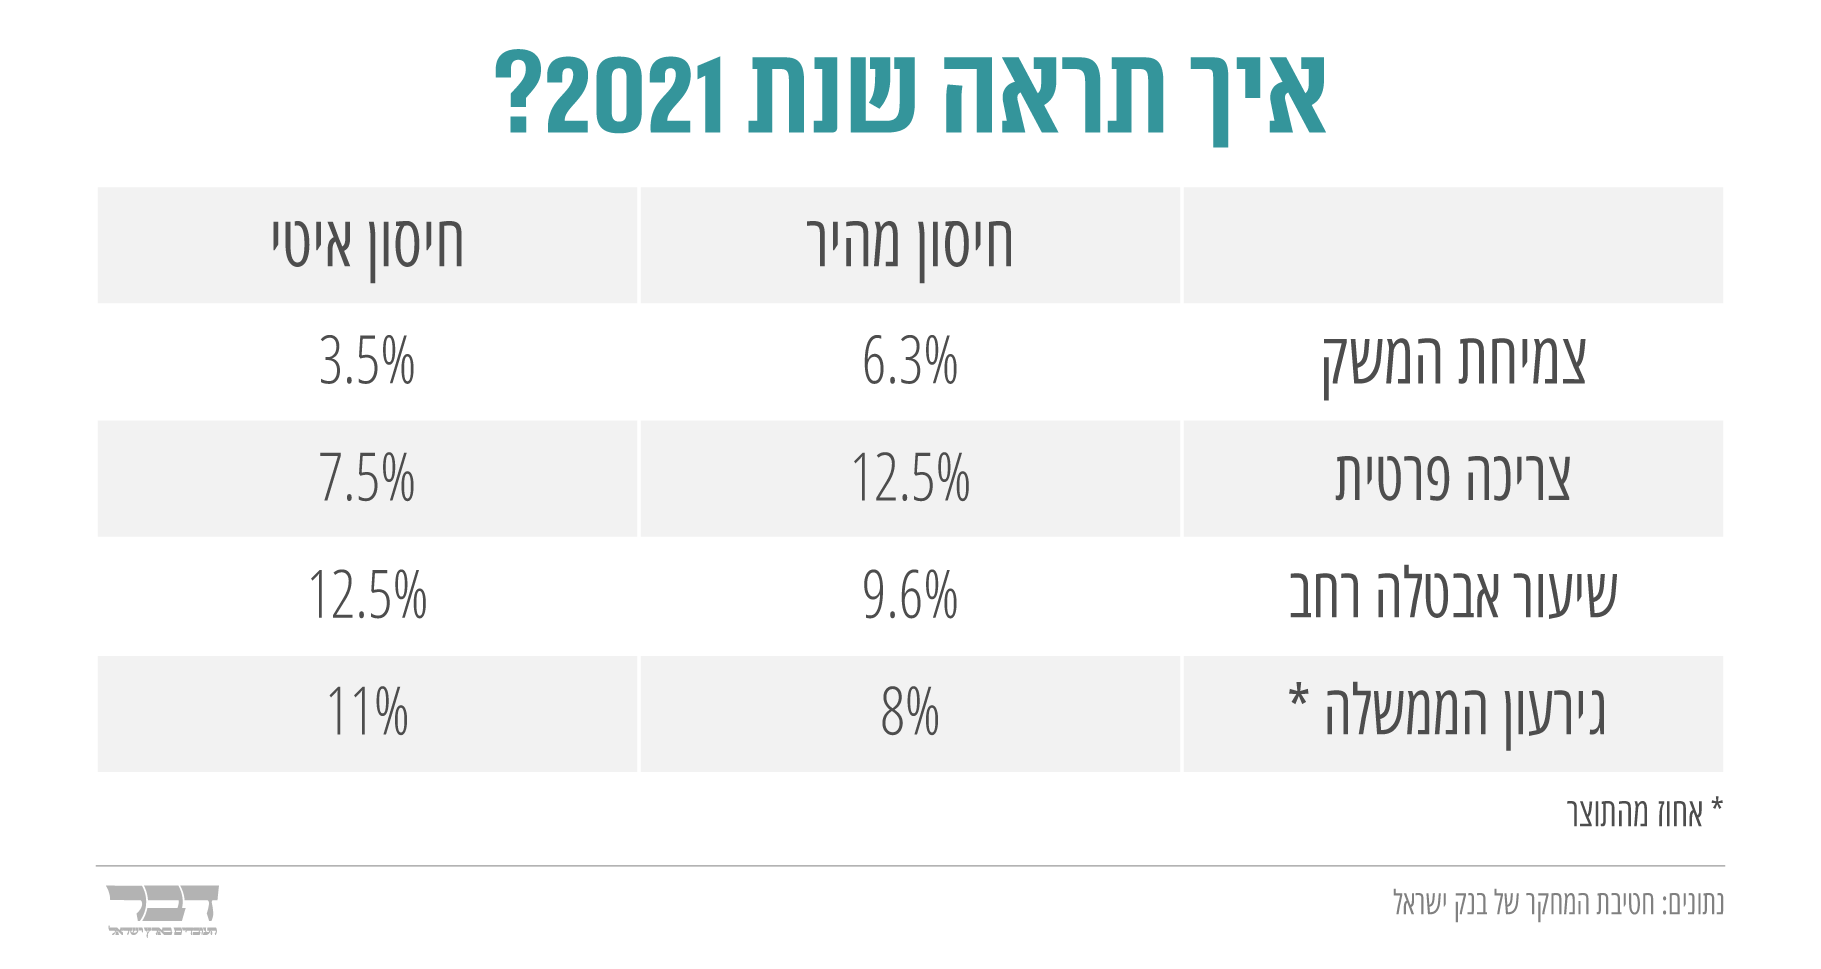 (נתונים: חטיבת המחקר של בנק ישראל, עיצוב: אידאה)